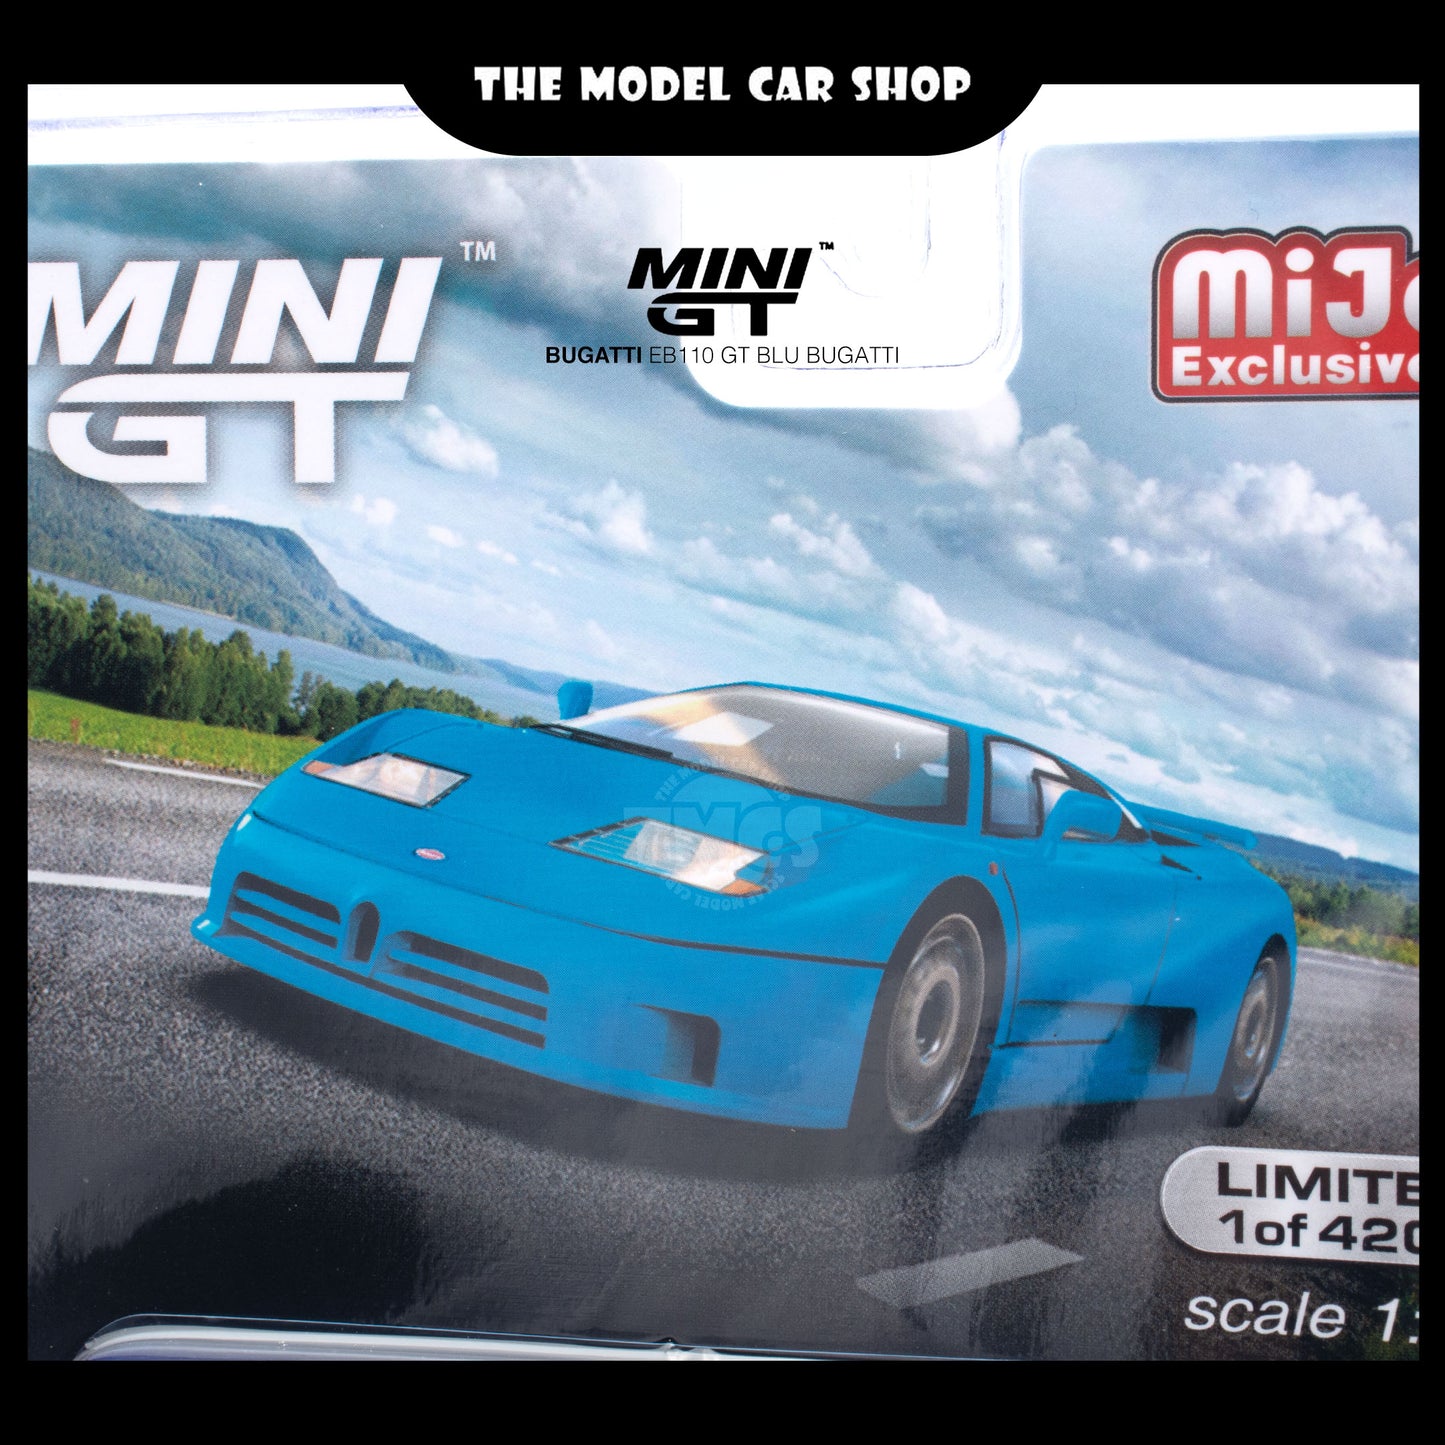 [MINI GT] Bugatti EB110 GT Blu Bugatti (Mijo Exclusive)